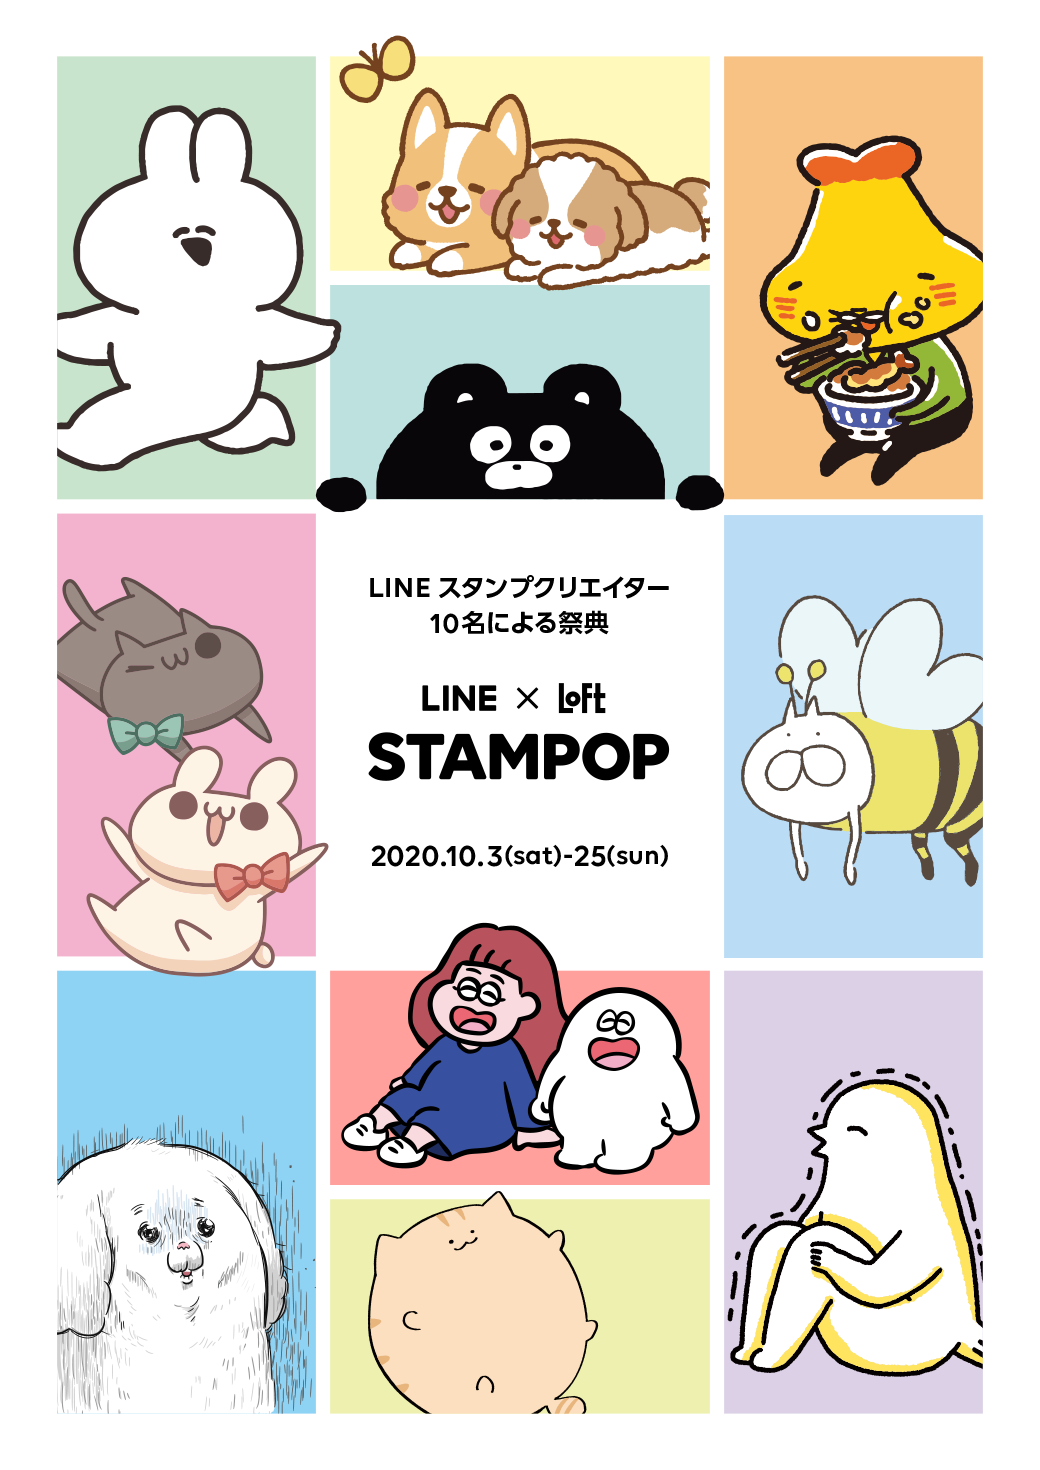 Stampop Line X Loft 開催 Lineスタンプ公式ブログ